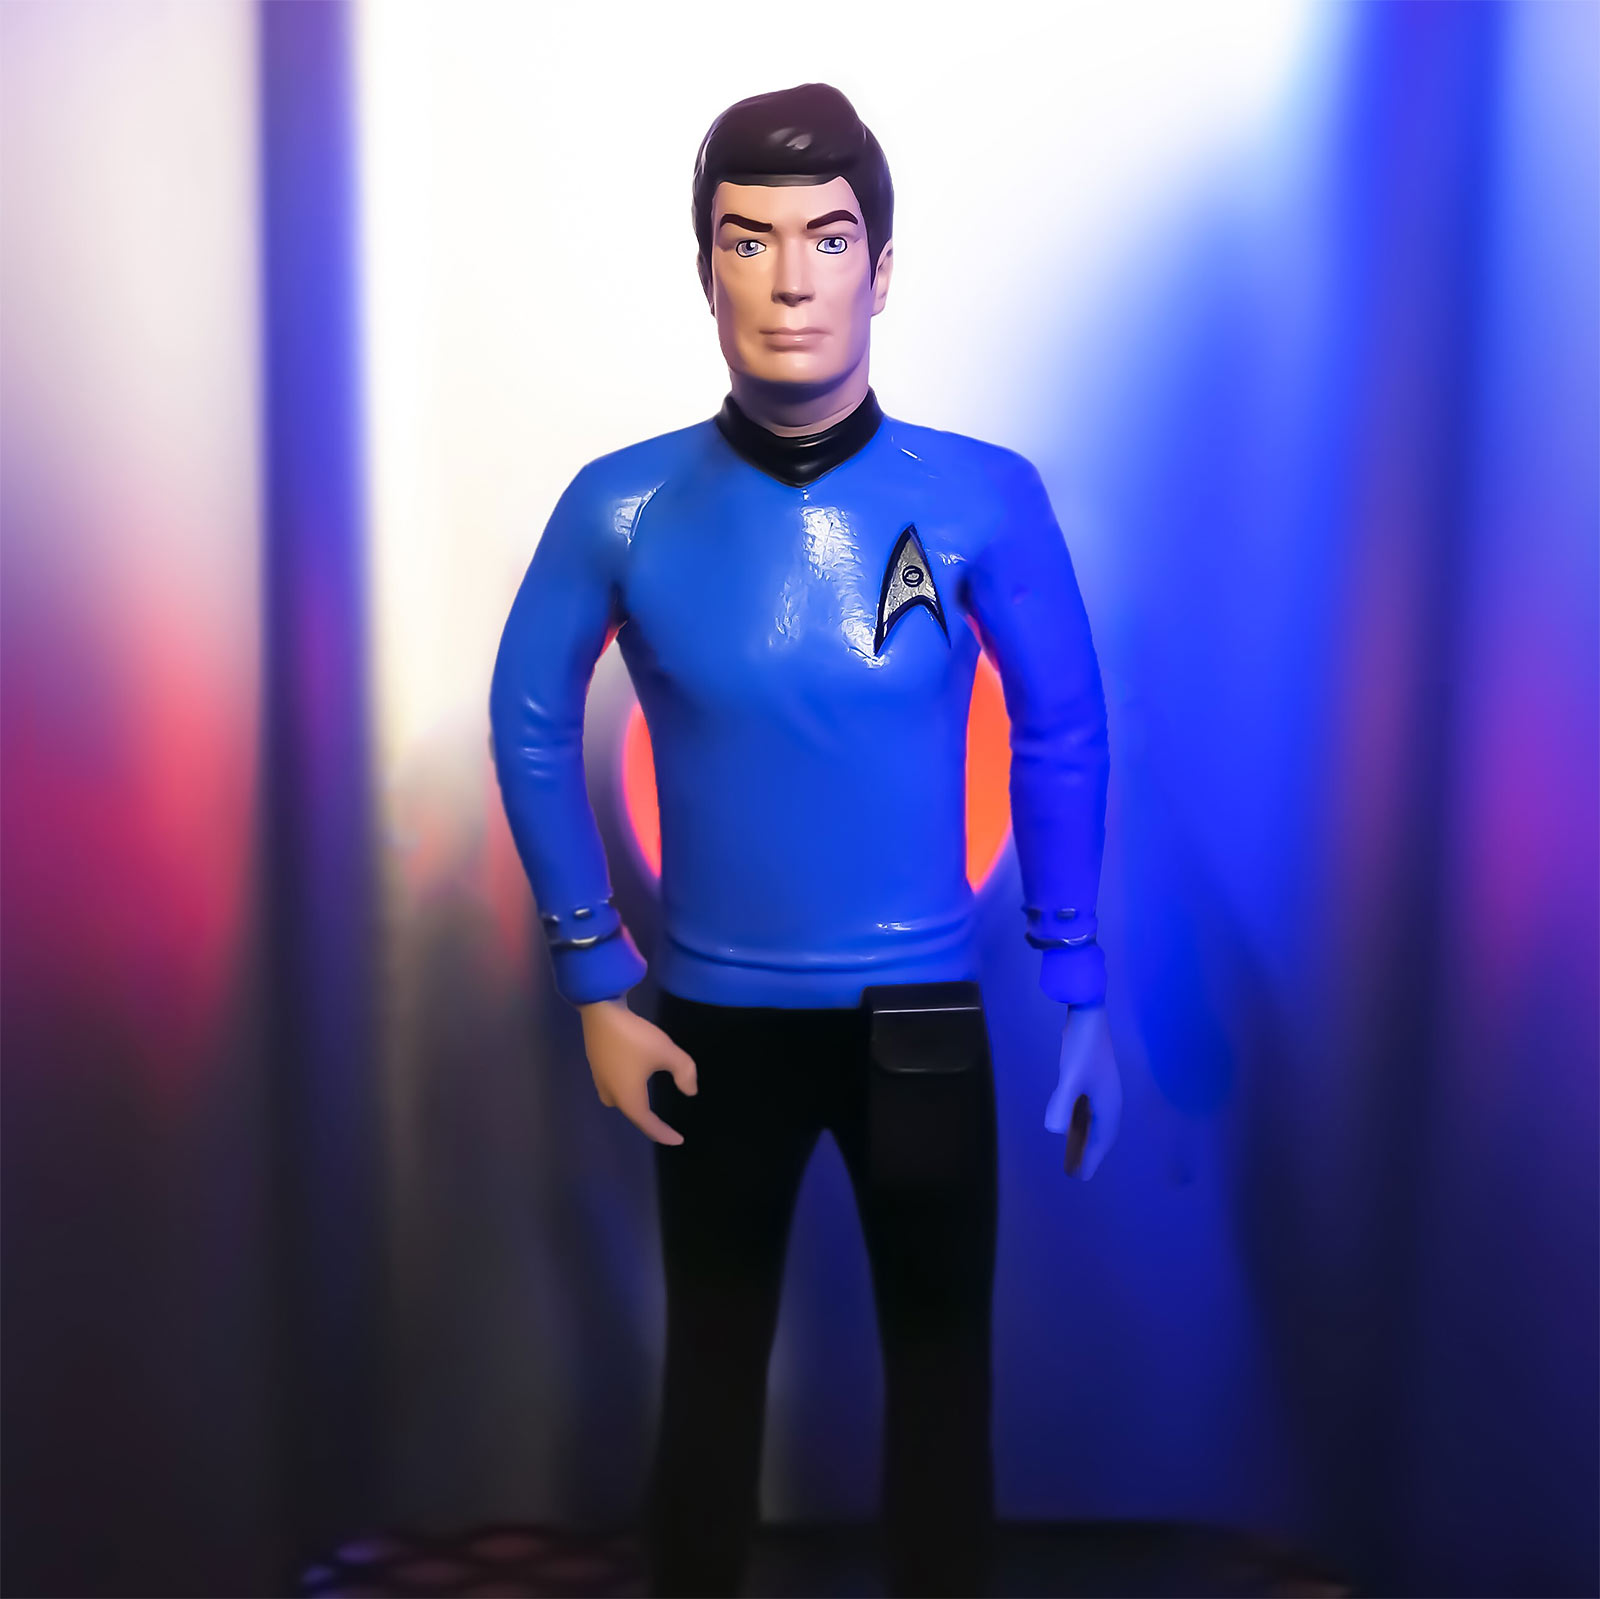 Star Trek - McCoy Bendyfigs Figure 19 cm